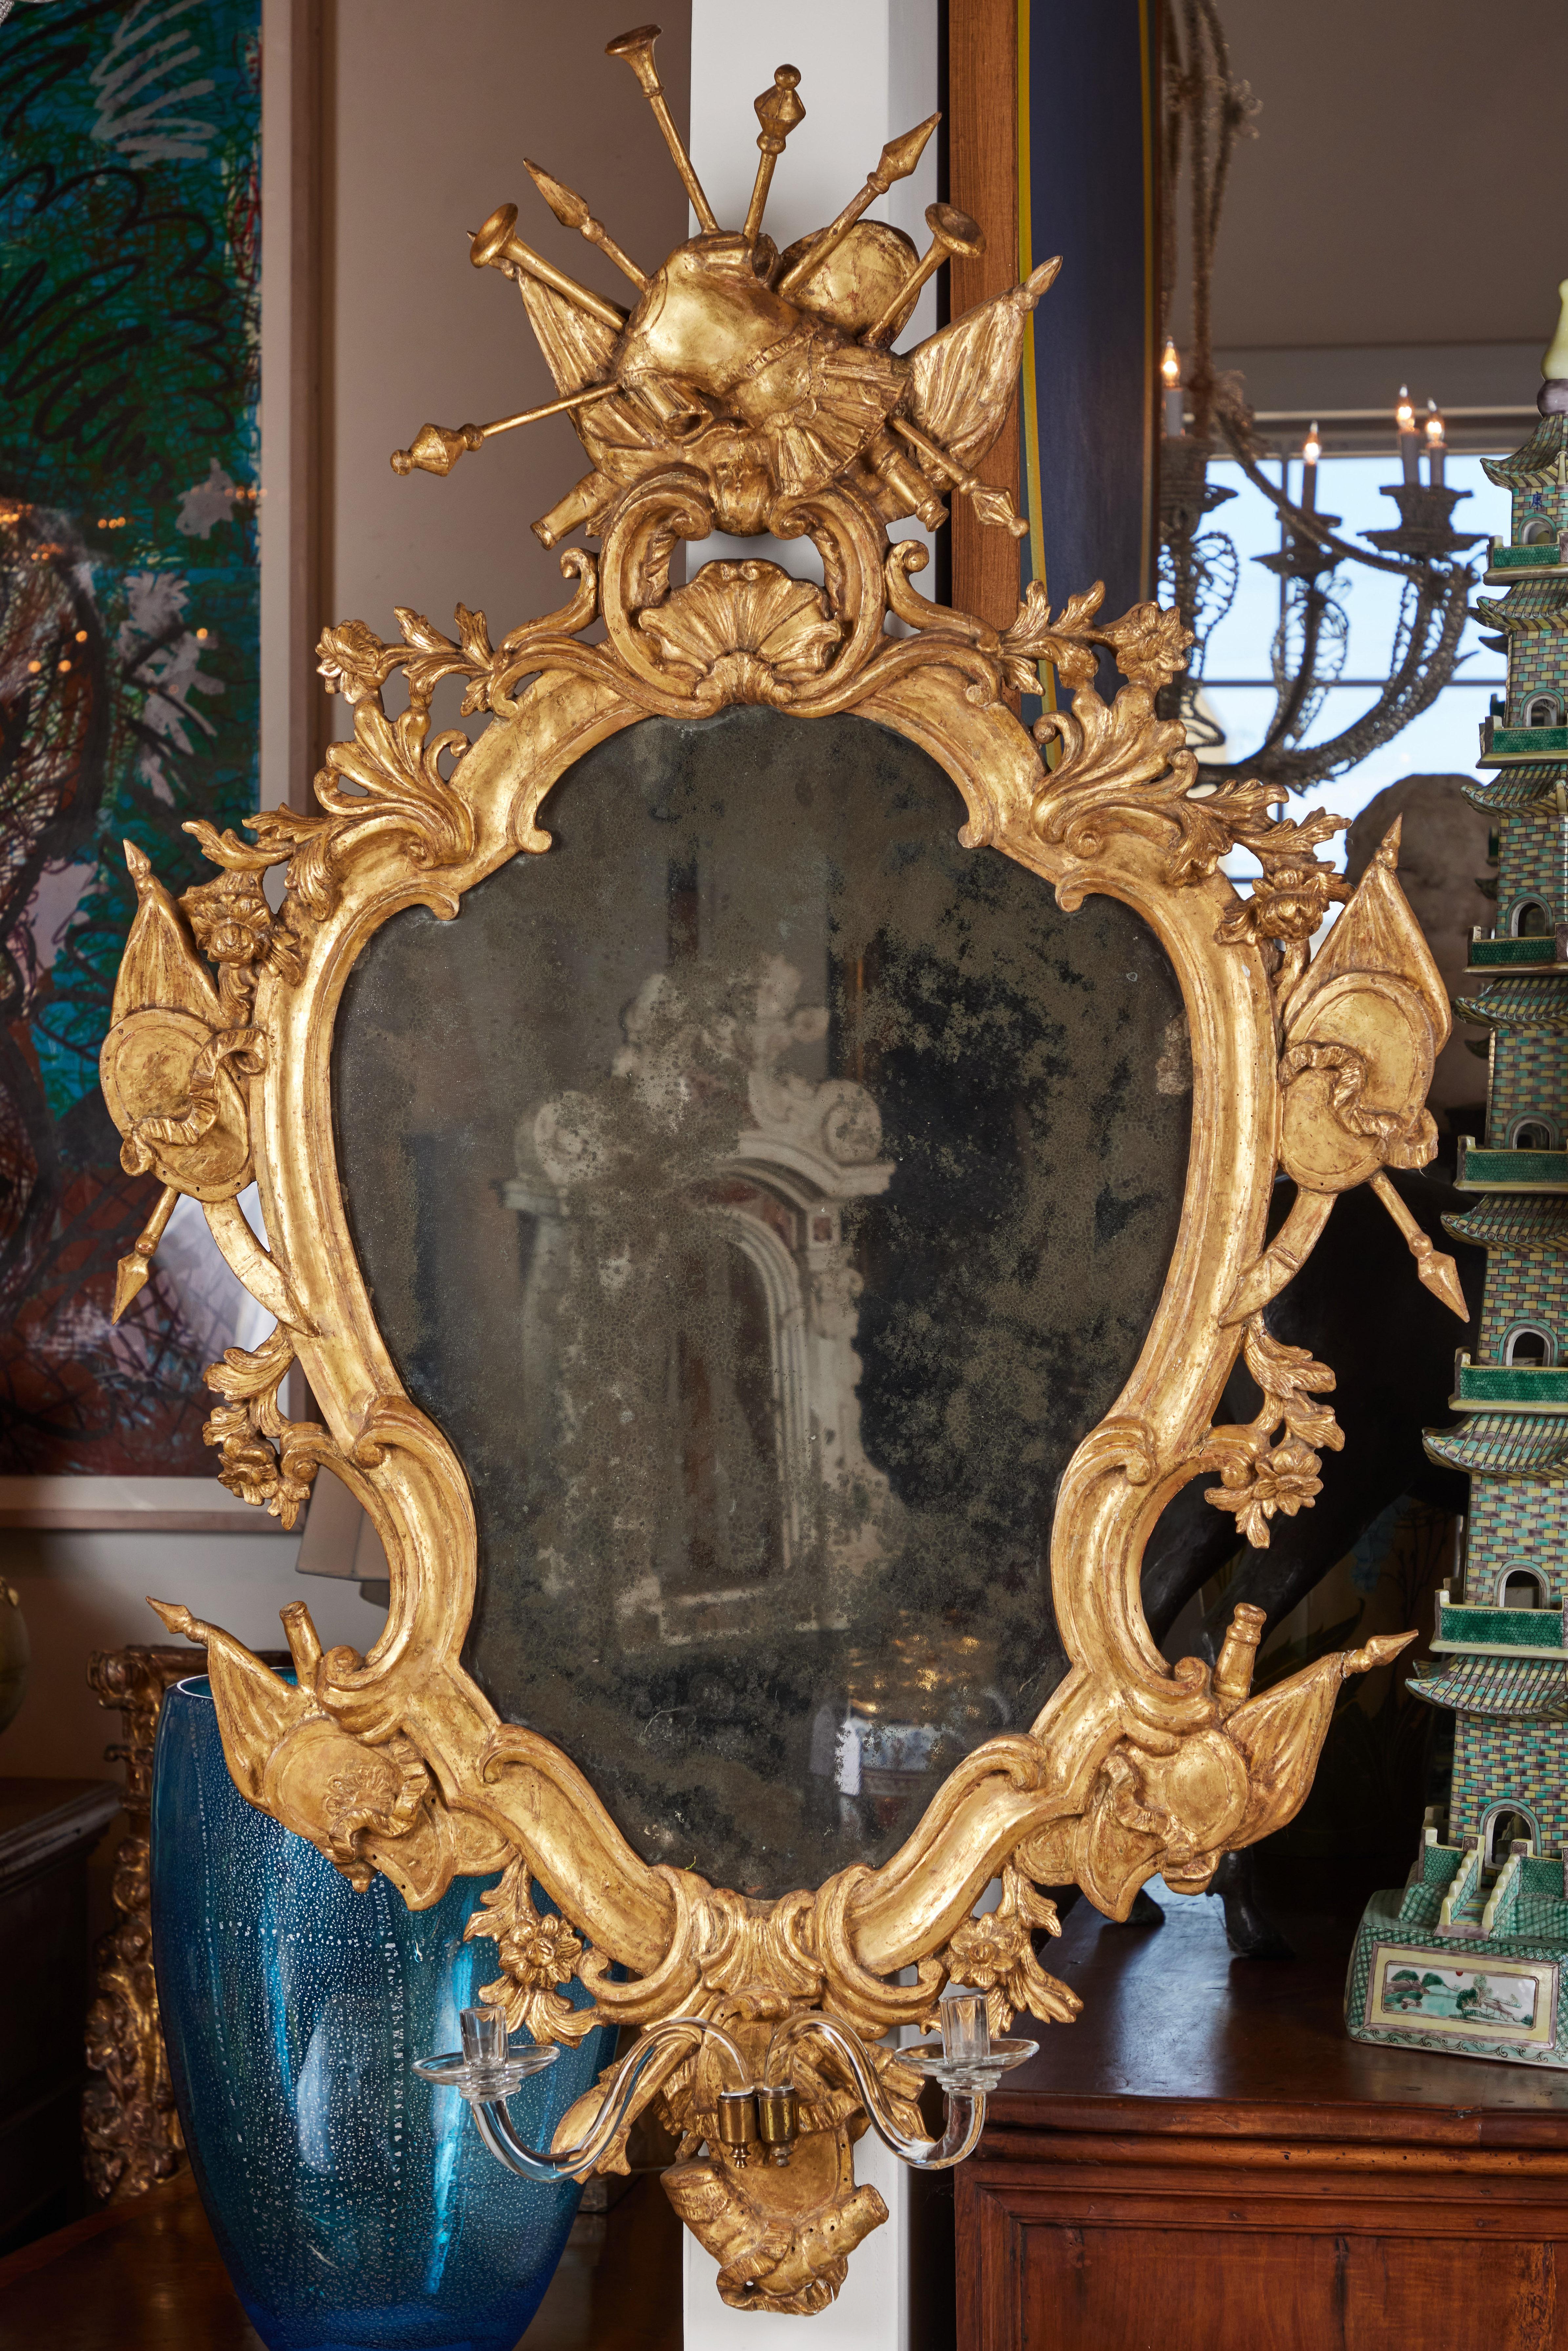 Paire de miroirs vénitiens de grande taille, entièrement originaux, sculptés à la main, gessés et dorés à l'or fin 22 carats, en forme d'écusson, présentant des reliefs feuillus, des drapeaux et des couronnes dramatiques composées d'armures de